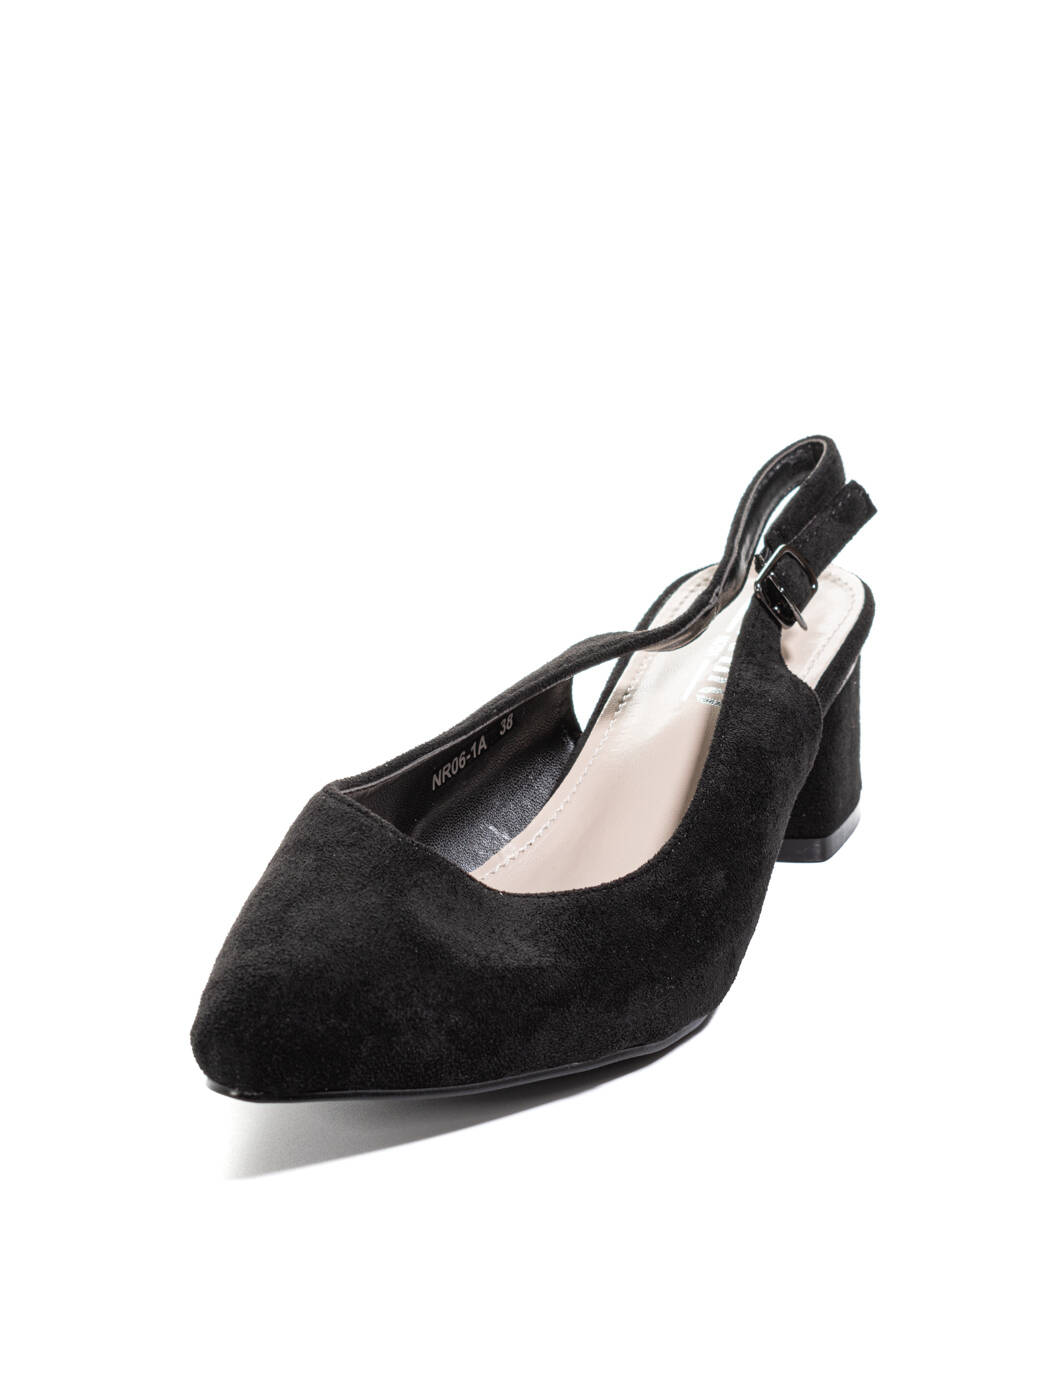 Туфли женские черные экозамша каблук устойчивый лето от производителя AM вид 2